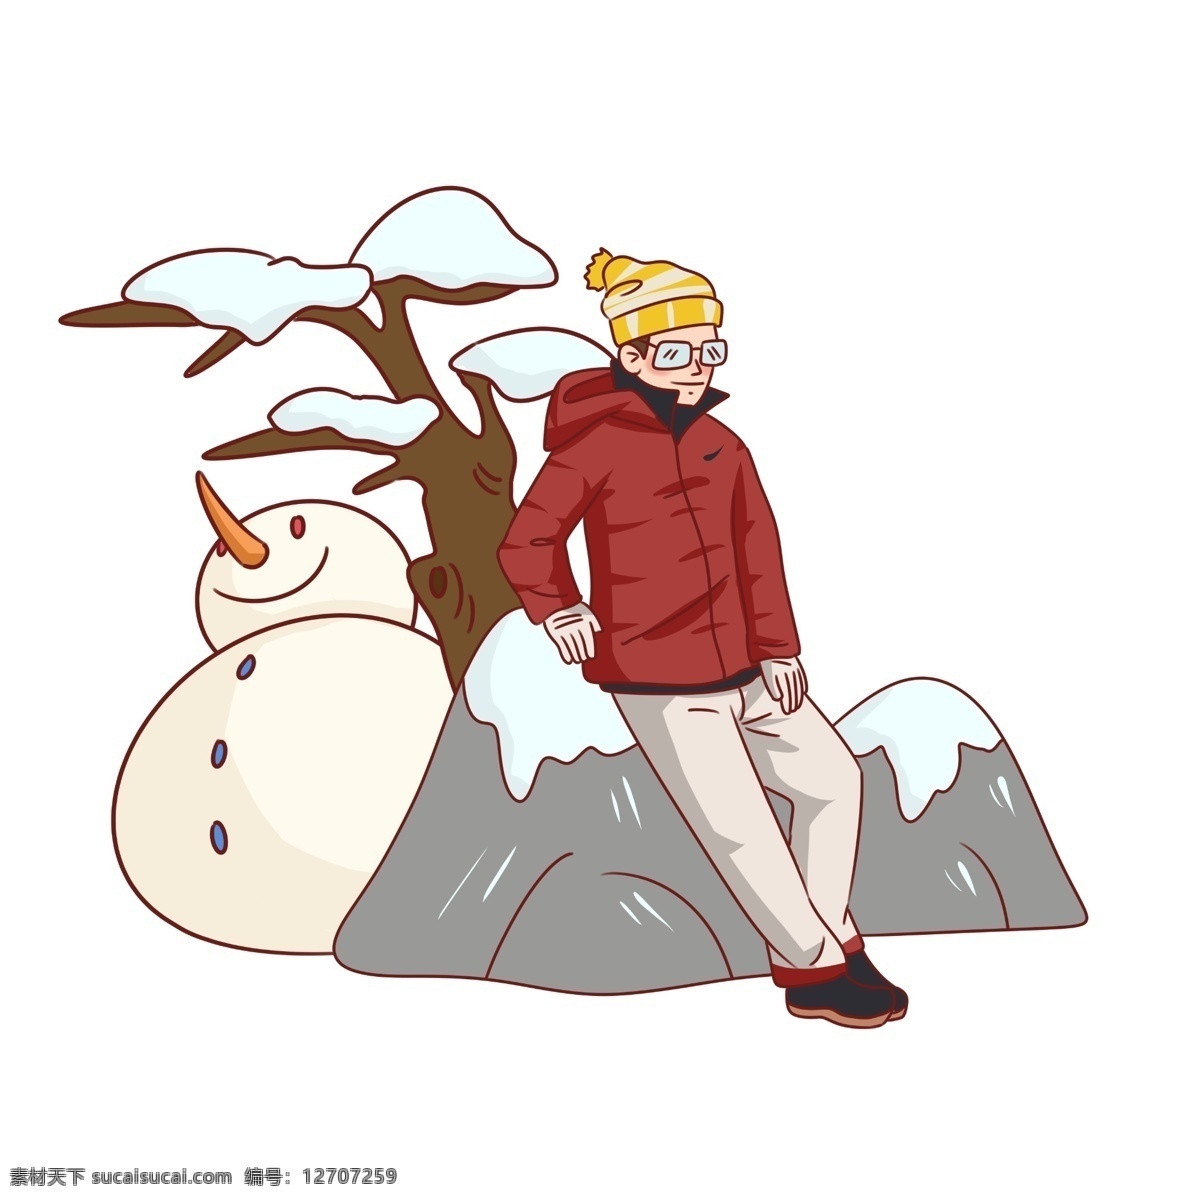 手绘 冬季 旅游 堆 雪人 人物 插画 大雪天 冰天雪地 白色雪原 冰雪景色 堆雪人 卡通男子人物 旅游人物